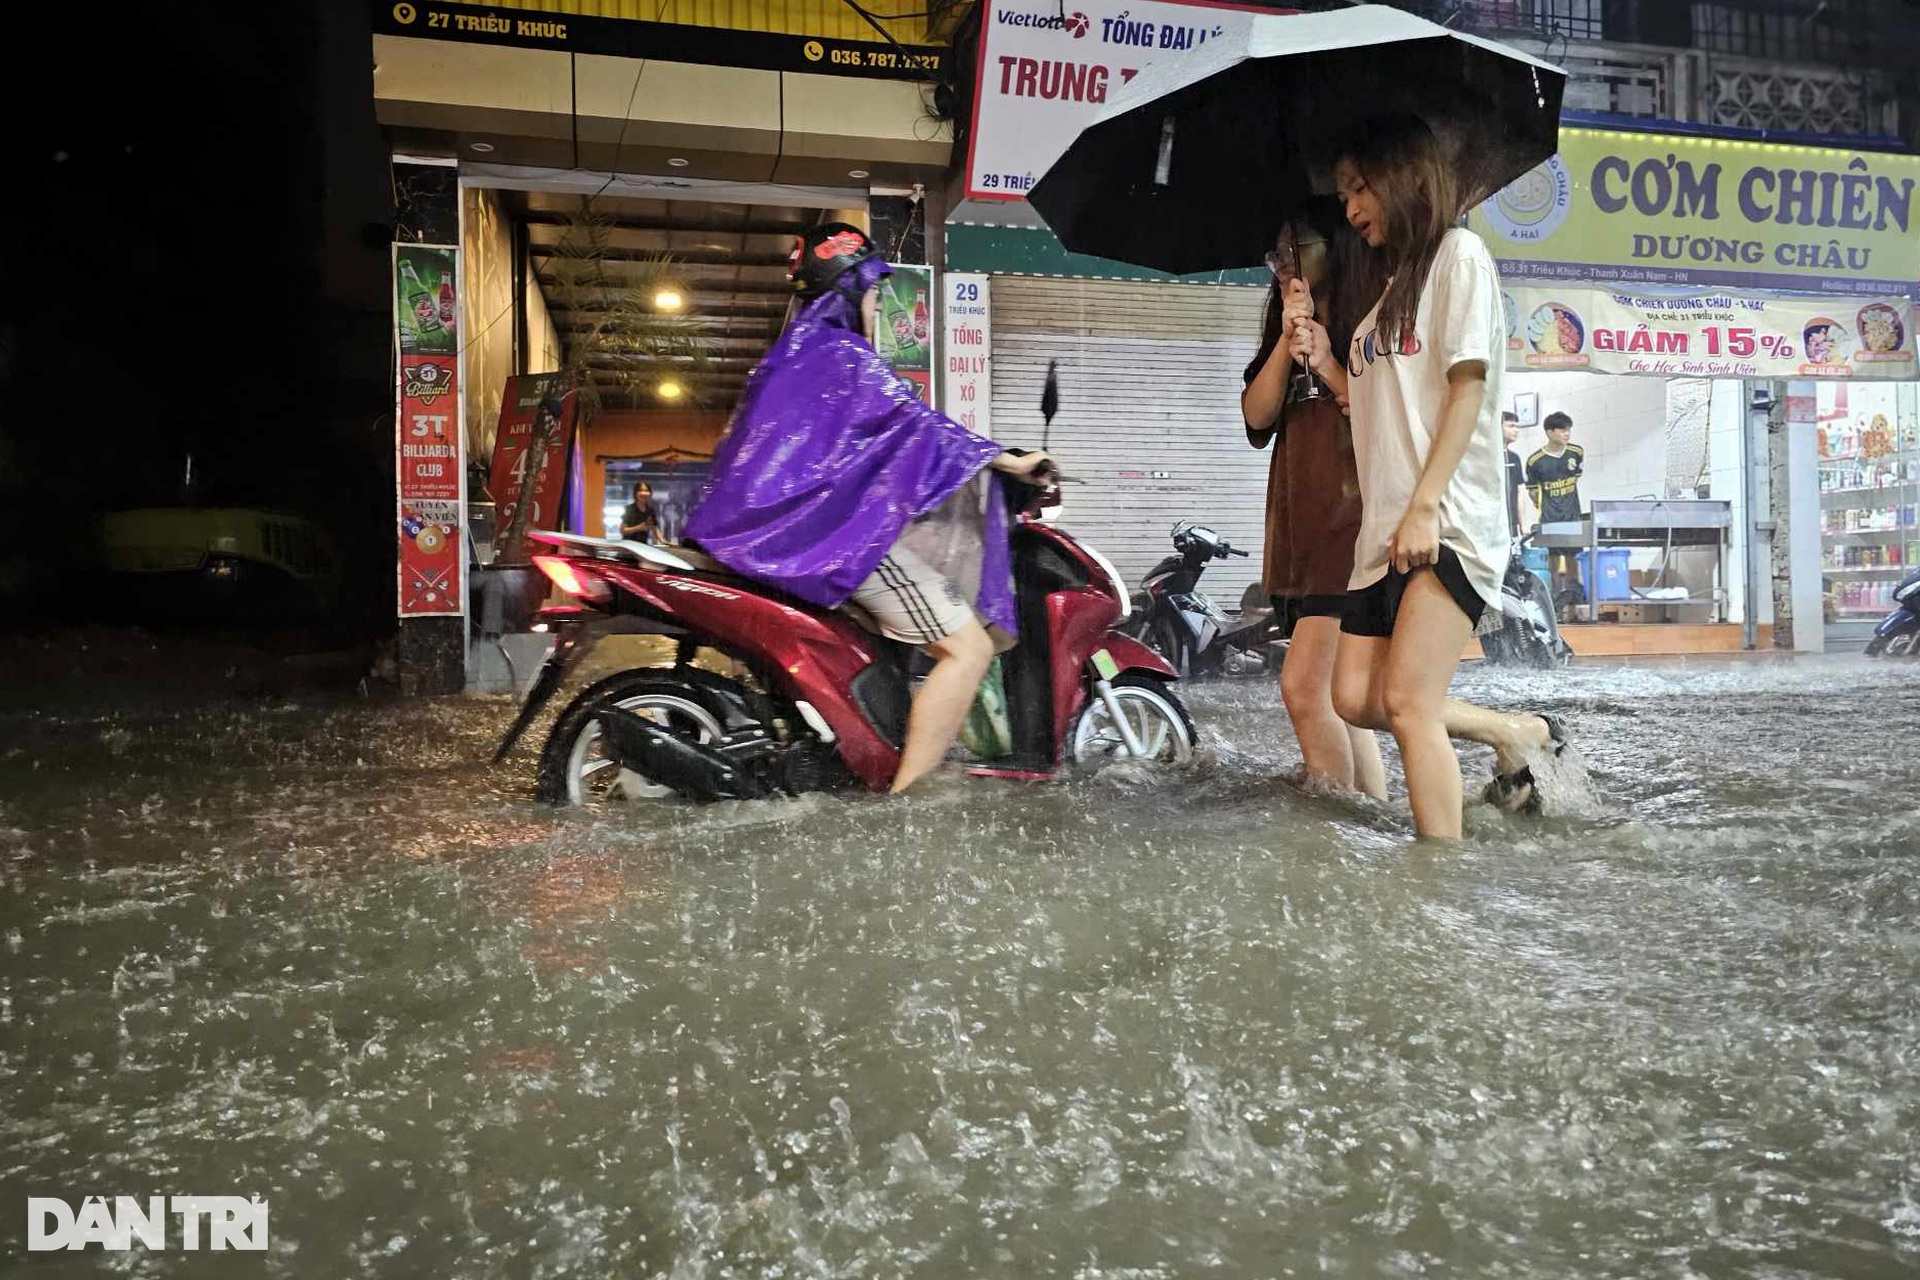 Mưa bất chợt kéo dài, nhiều tuyến phố Hà Nội ngập sâu trong nước - 5